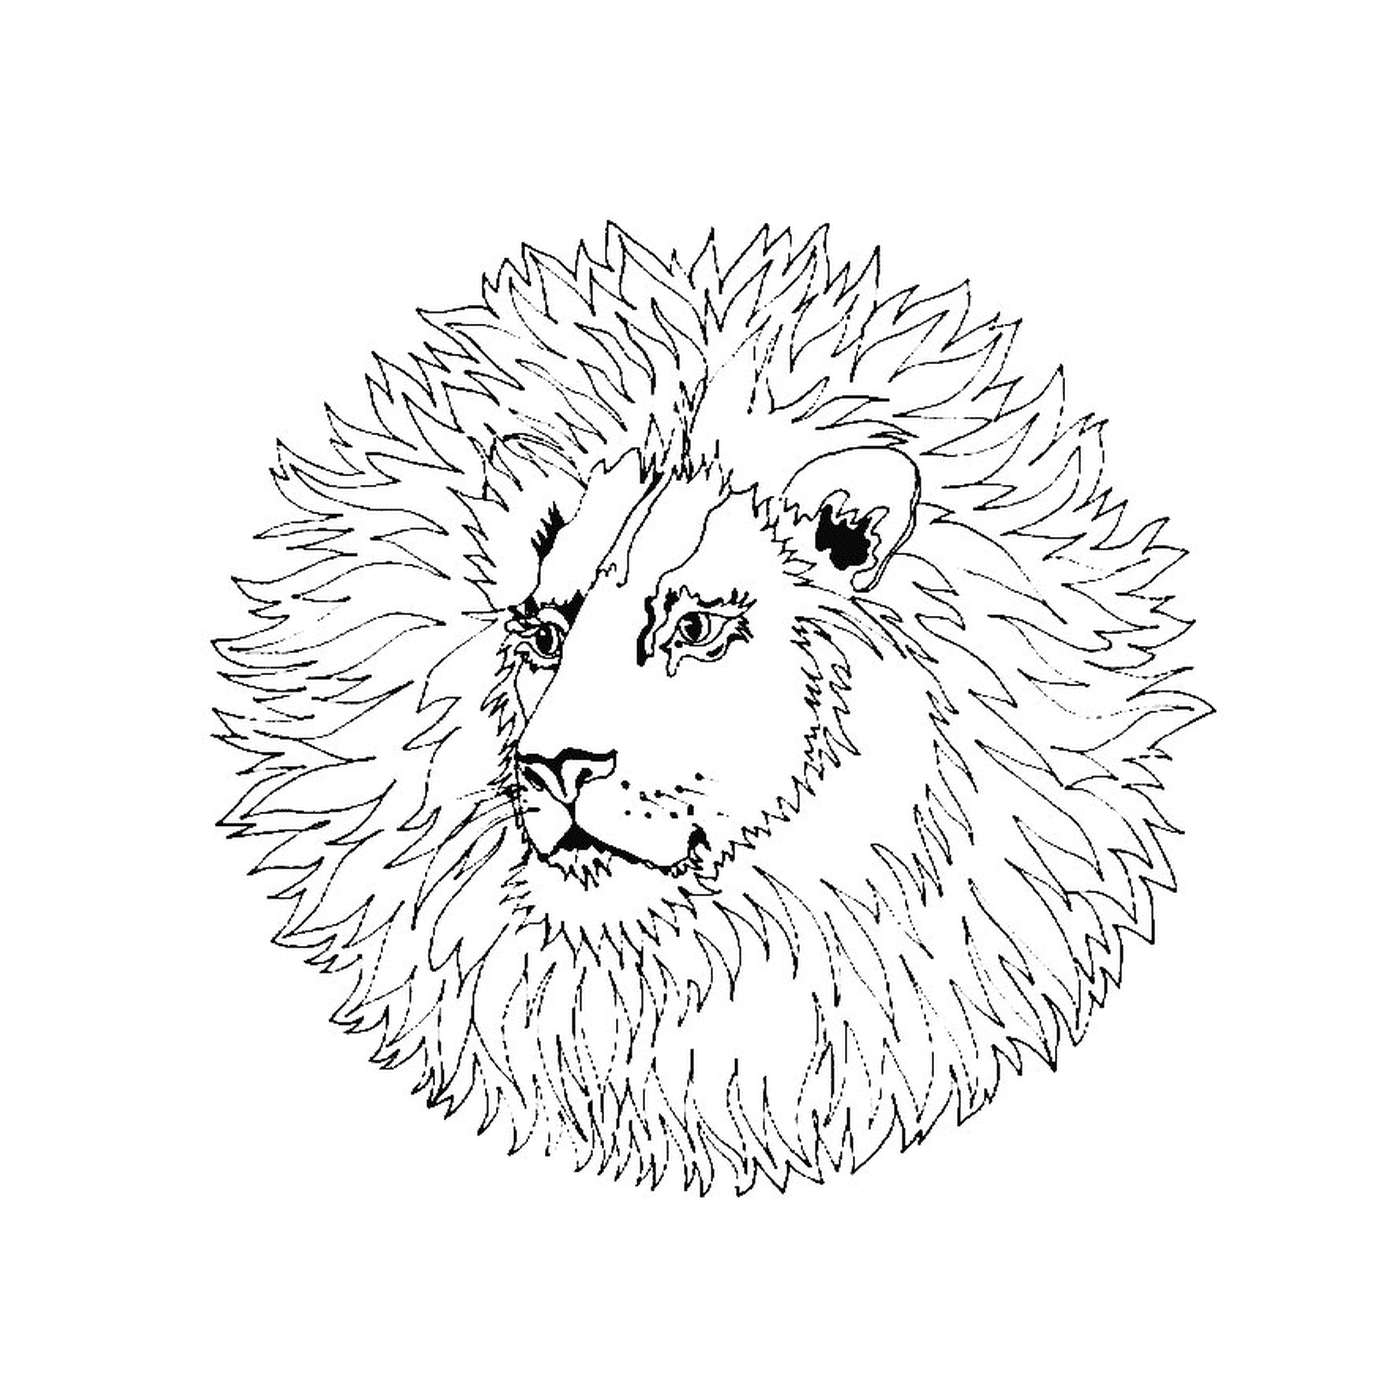  大狮子狮子会 